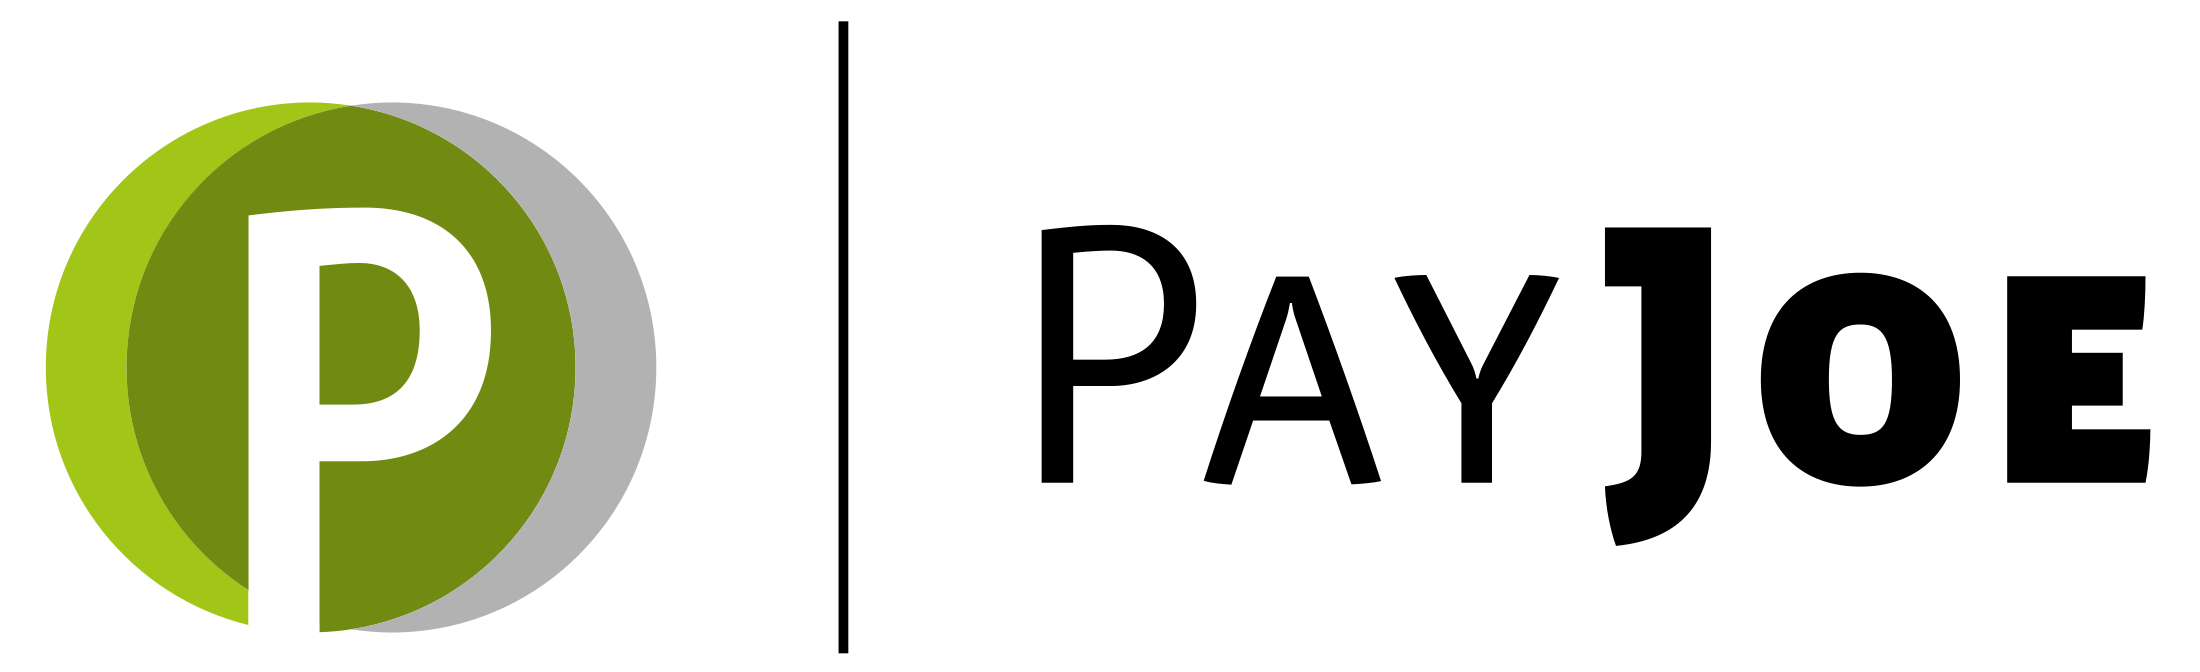 PayJoe Logo